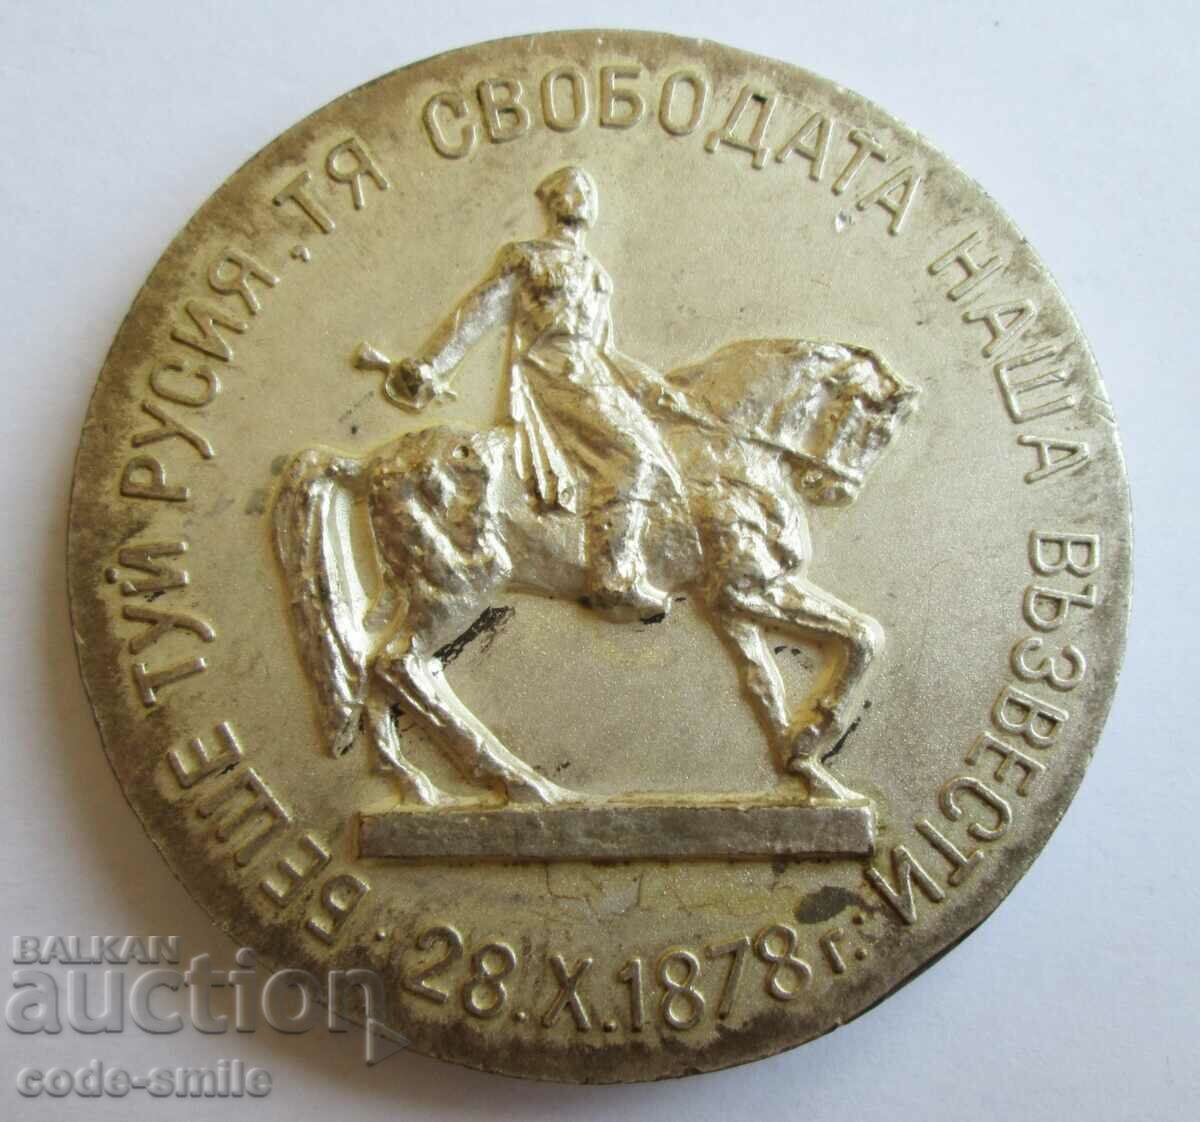 Σπάνια πλακέτα ΓΙΑ ΤΗ ΛΕΥΤΕΡΙΑ 1878 επιτραπέζιο μετάλλιο Βρατσάτα